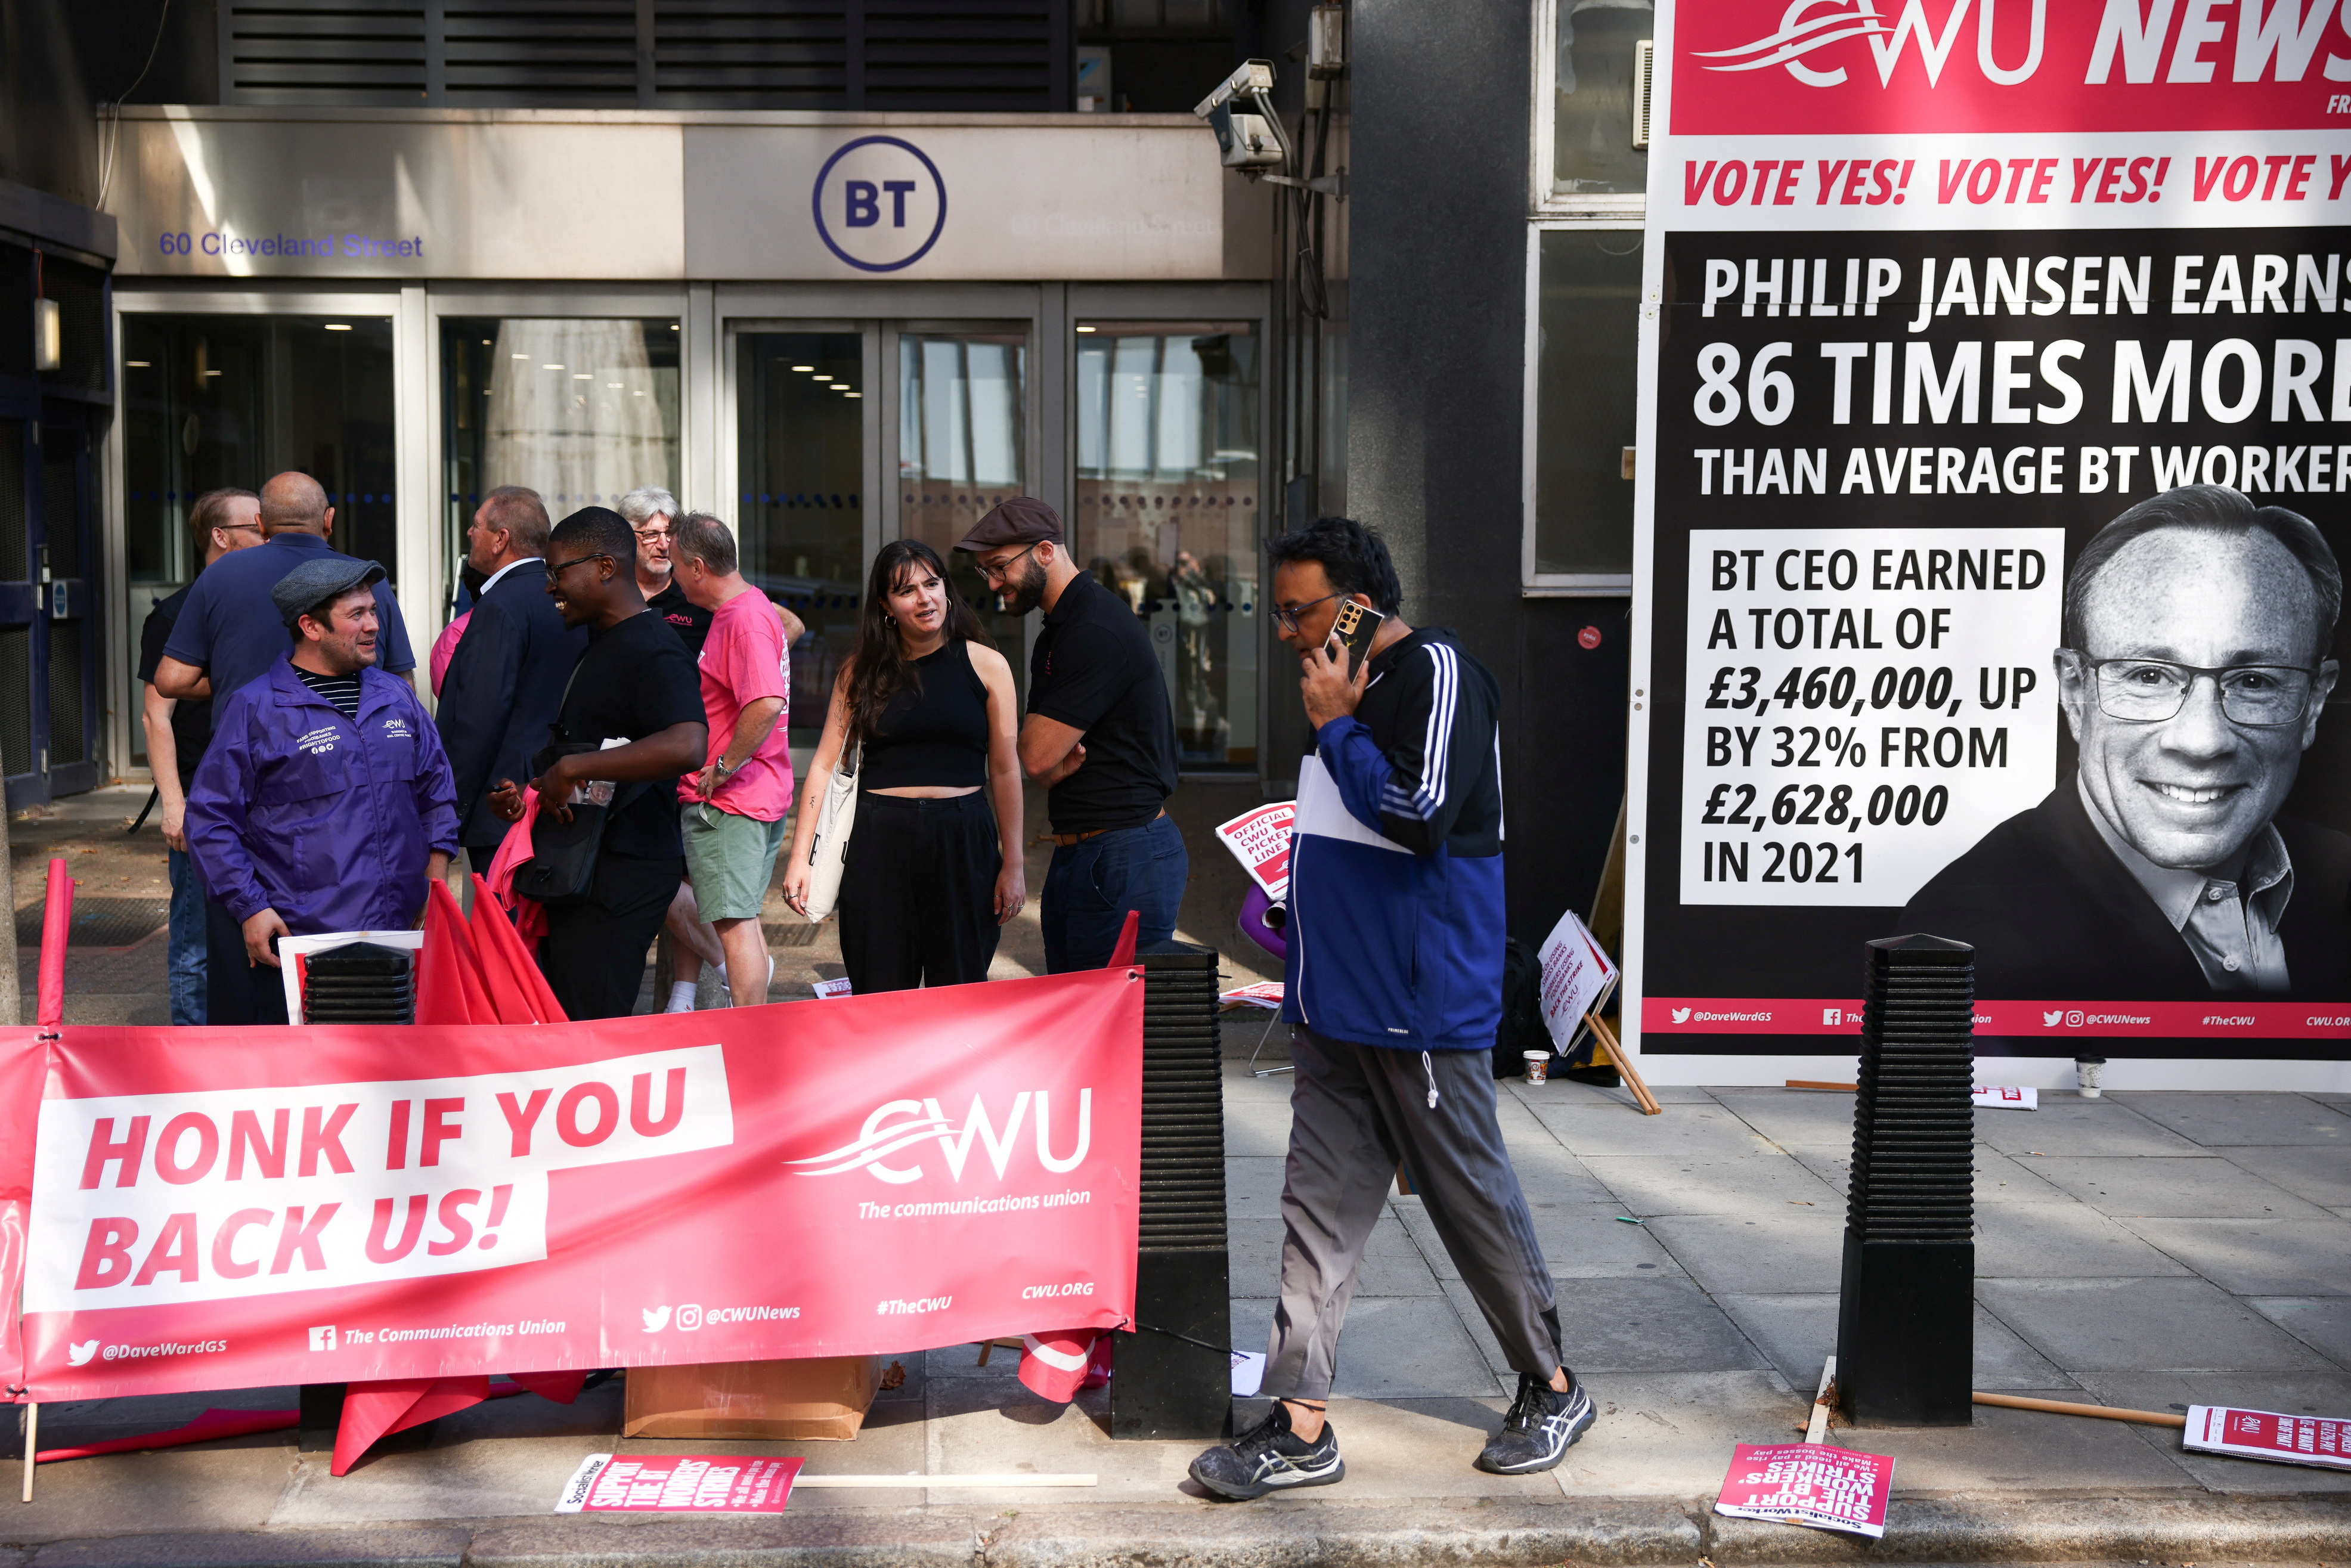 Trabajadores de BT Group plc, agremiados con el sindicato CWU de comunicaciones, en una protesta en Londres (Reuters)